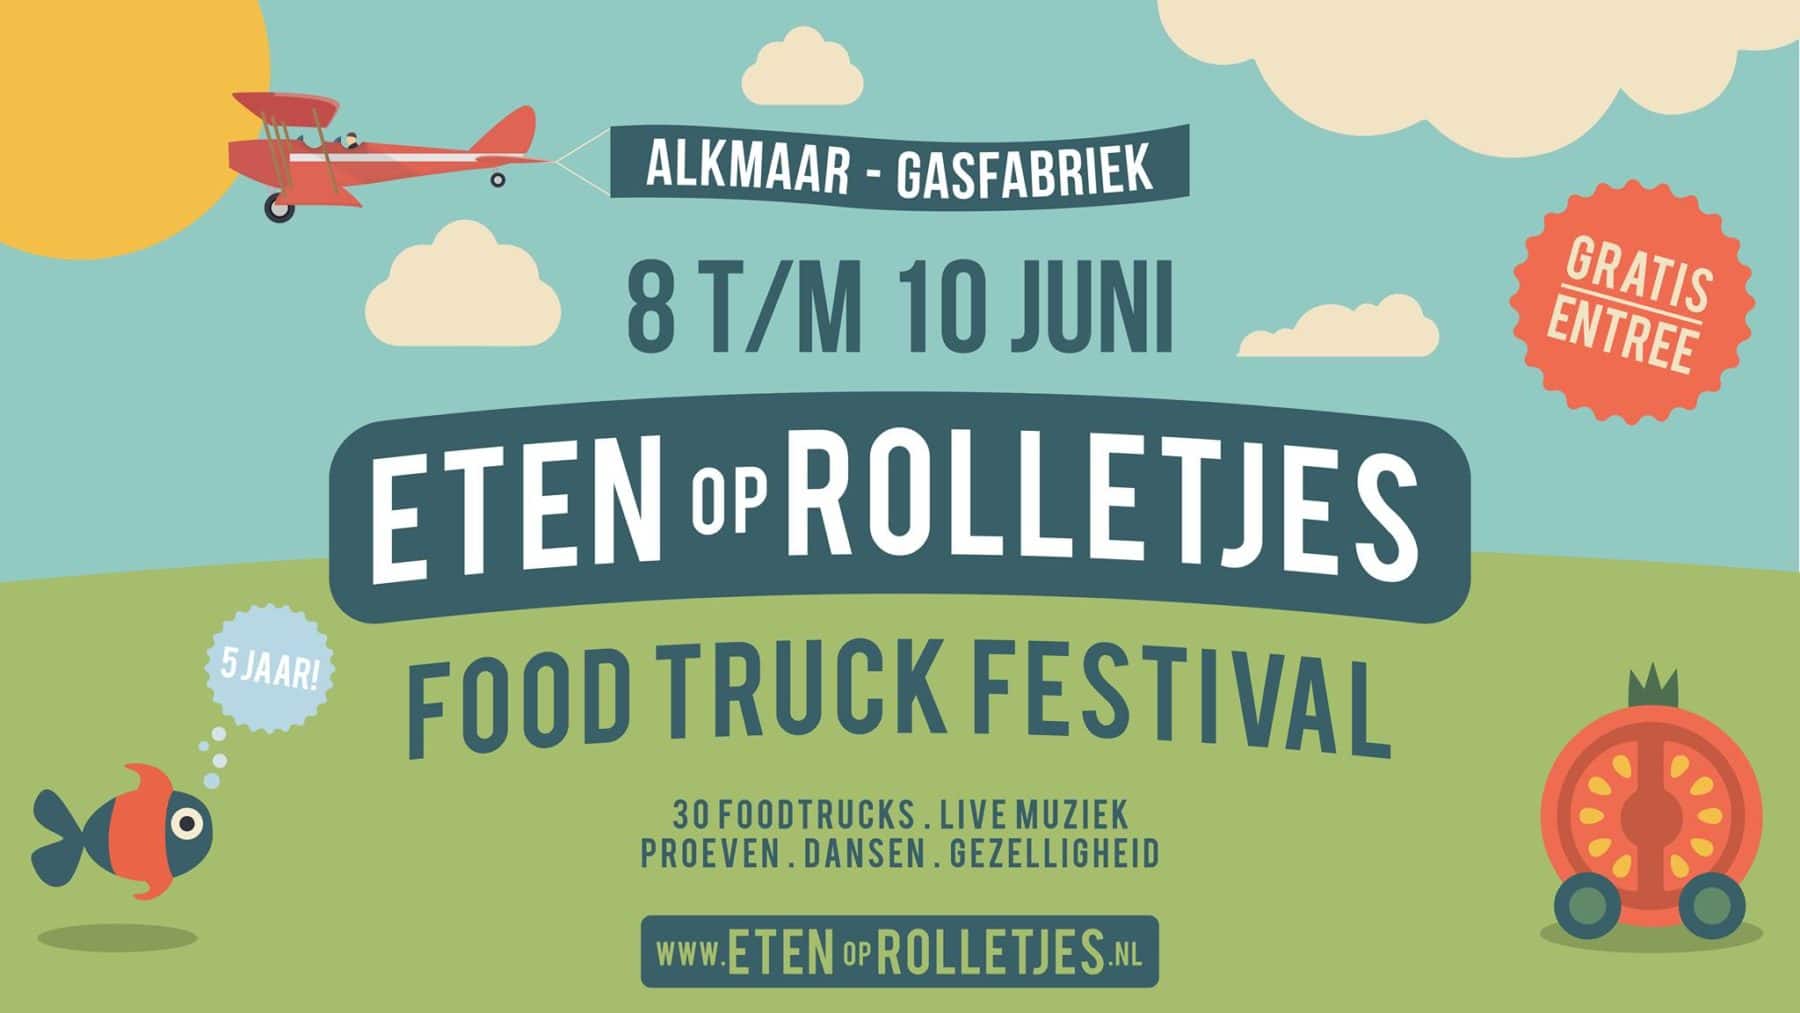 Eten op Rolletjes Alkmaar 2018